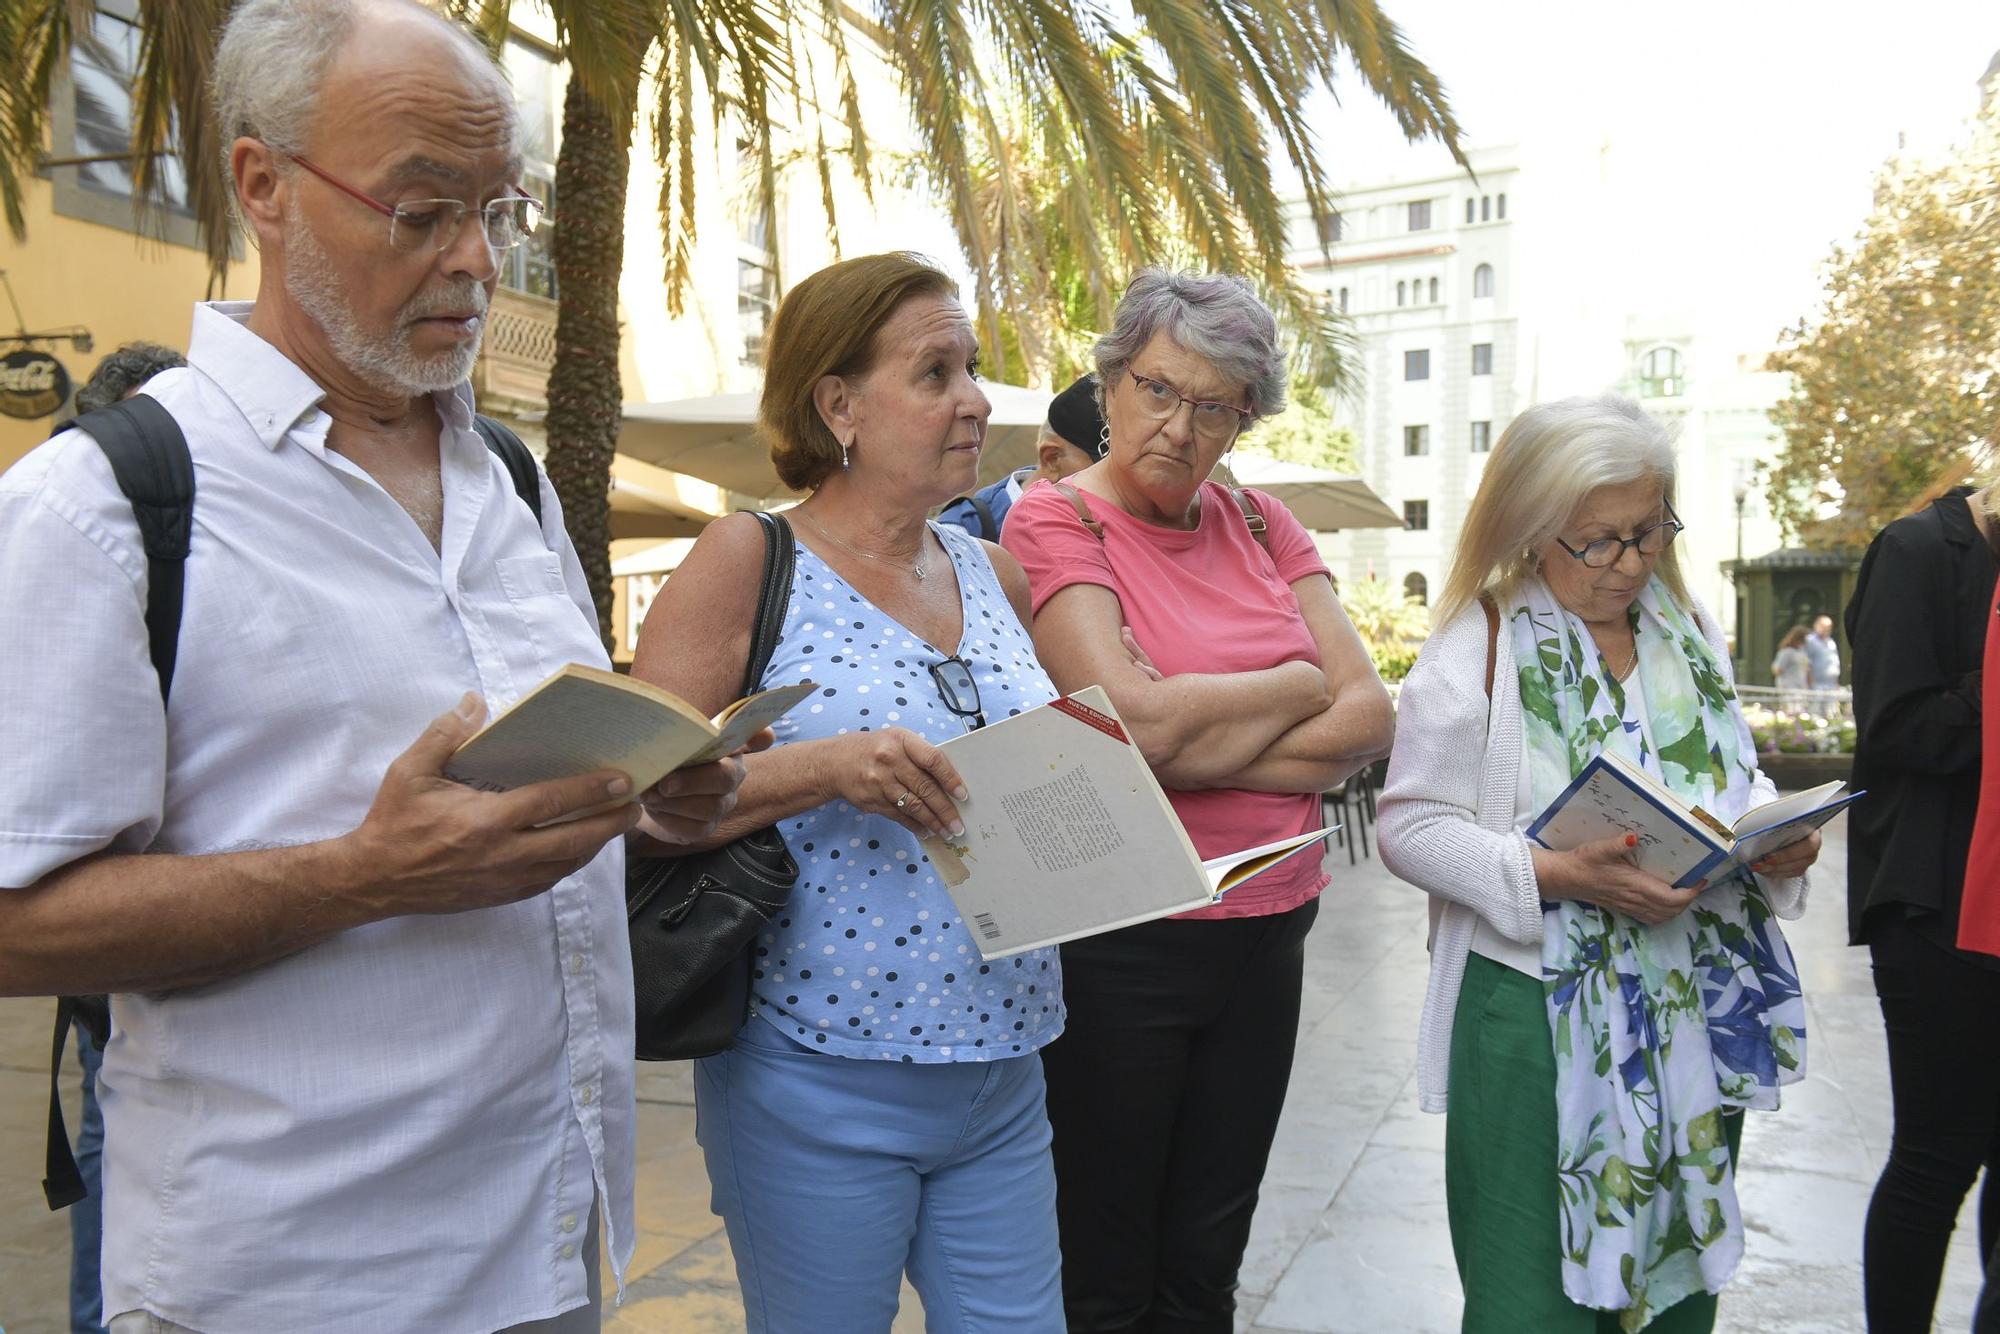 Lectura pública de 'El Principito' en la Plaza de las Ranas